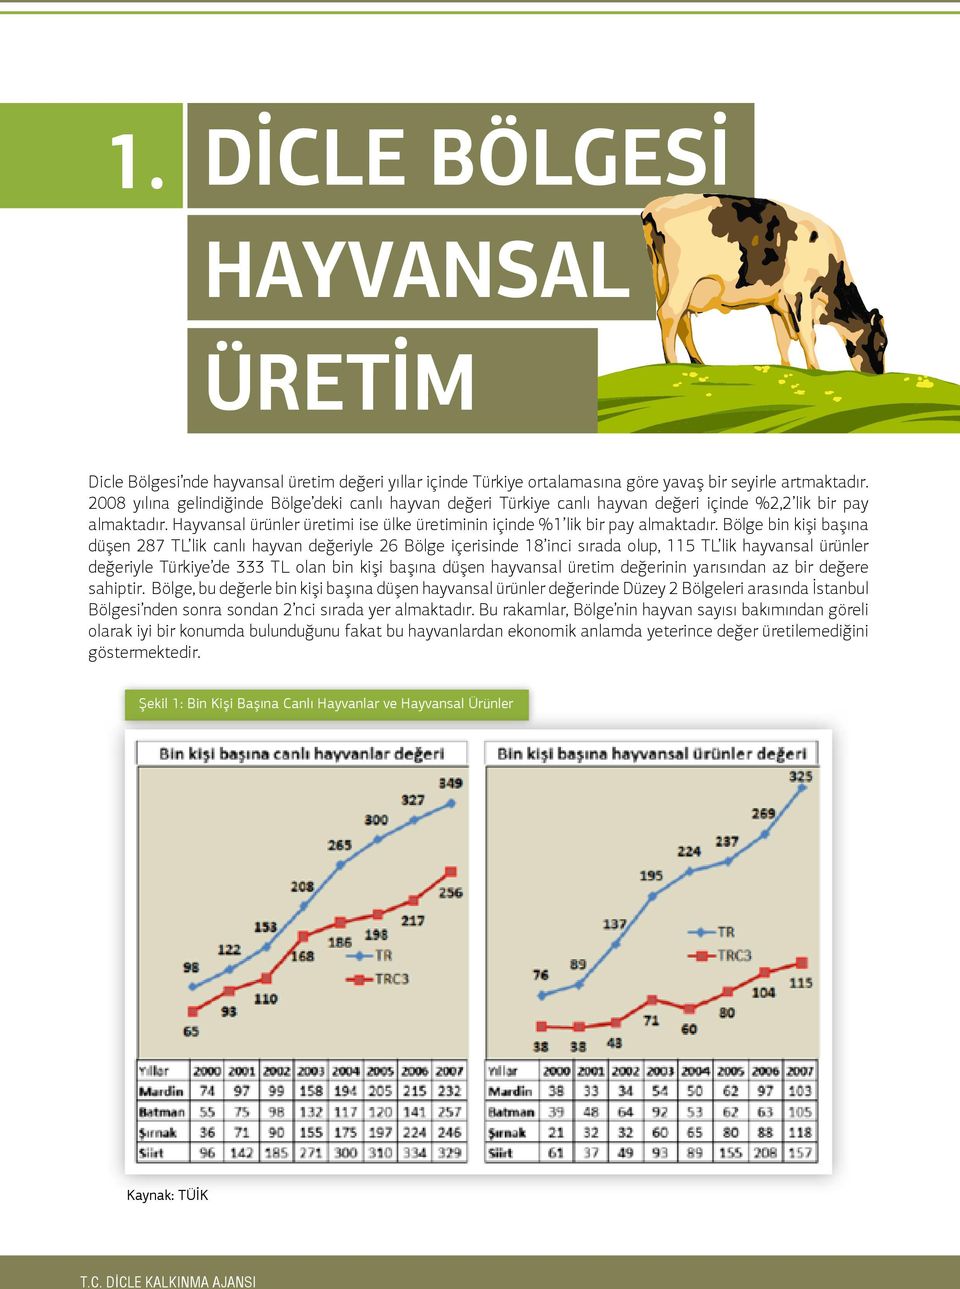 Bölge bin kişi başına düşen 287 TL lik canlı hayvan değeriyle 26 Bölge içerisinde 18 inci sırada olup, 115 TL lik hayvansal ürünler değeriyle Türkiye de 333 TL olan bin kişi başına düşen hayvansal